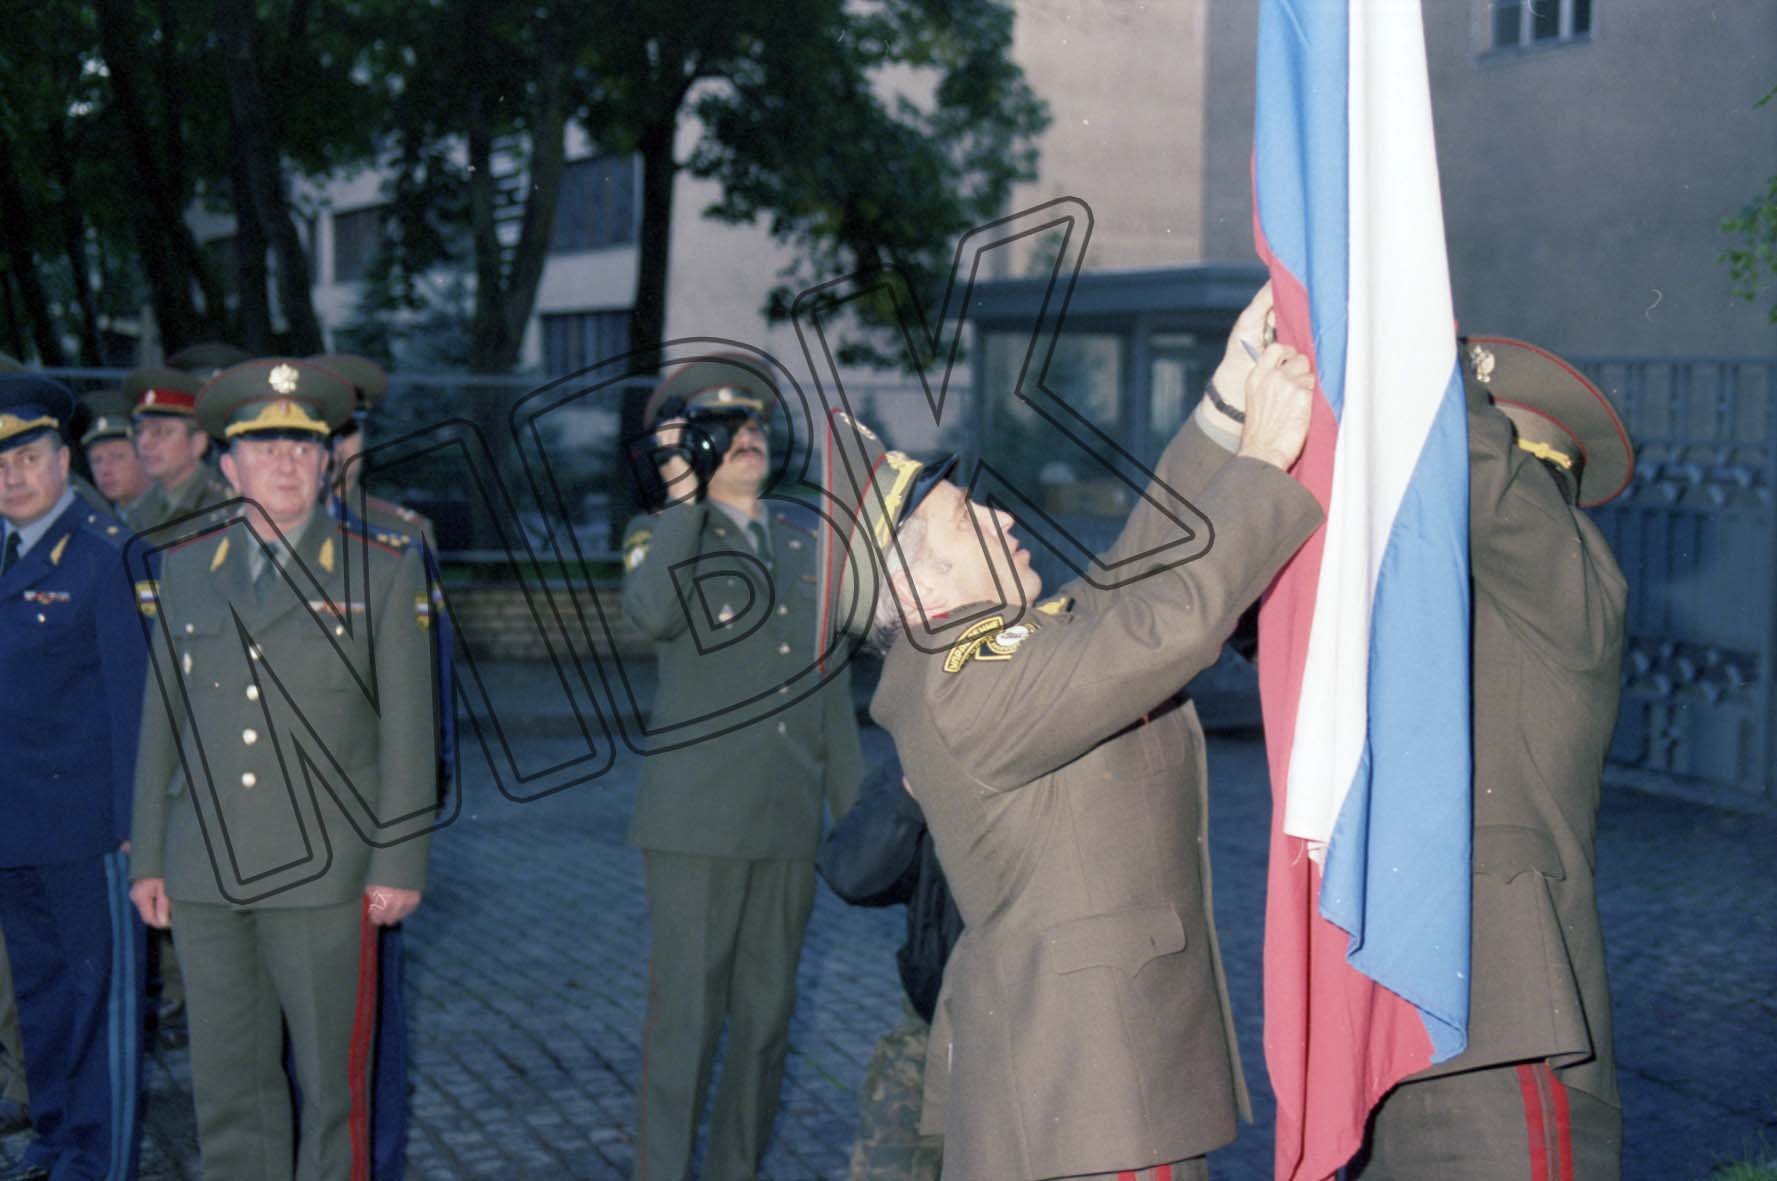 Fotografie: Stabschef Terentjew nimmt die russische Fahne vom Fahnenmast vor dem Hauptquartier der WGT, Wünsdorf, 9. September 1994 (Museum Berlin-Karlshorst RR-P)